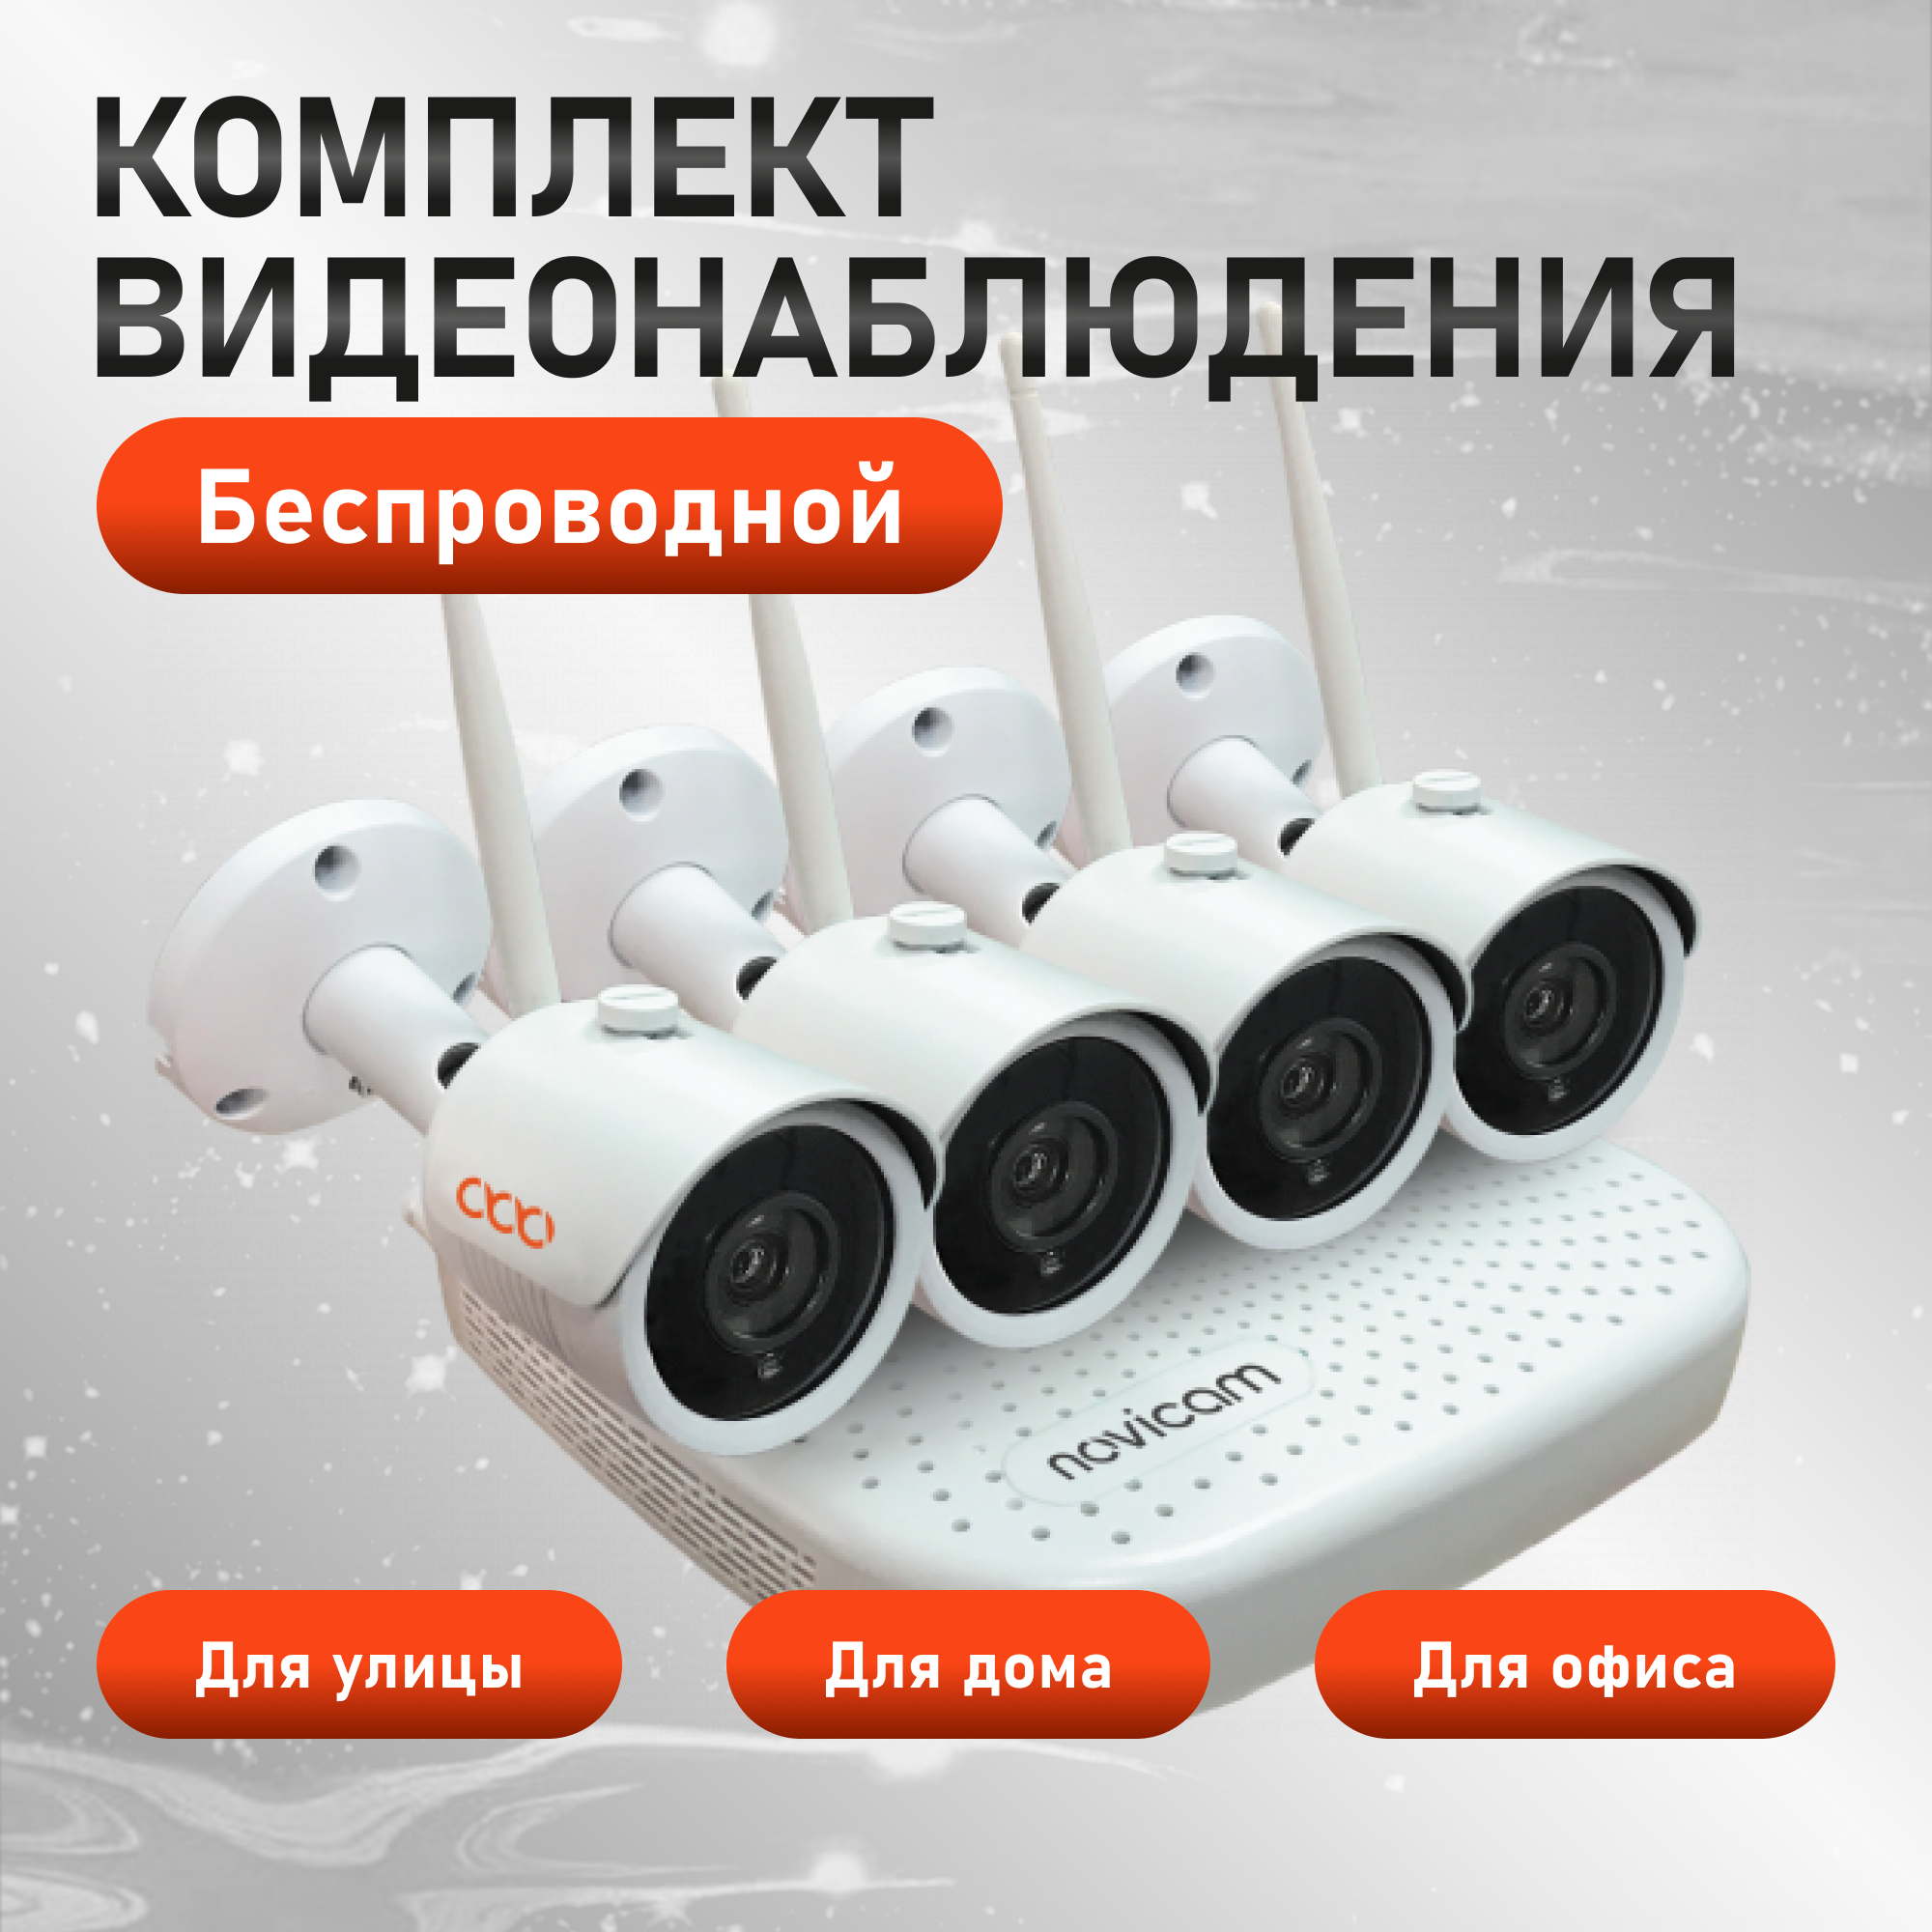 Комплект видеонаблюдения WiFi Novicam KIT 1204 ver.4490. 4 уличные камеры и регистратор 8ch мобильное приложение